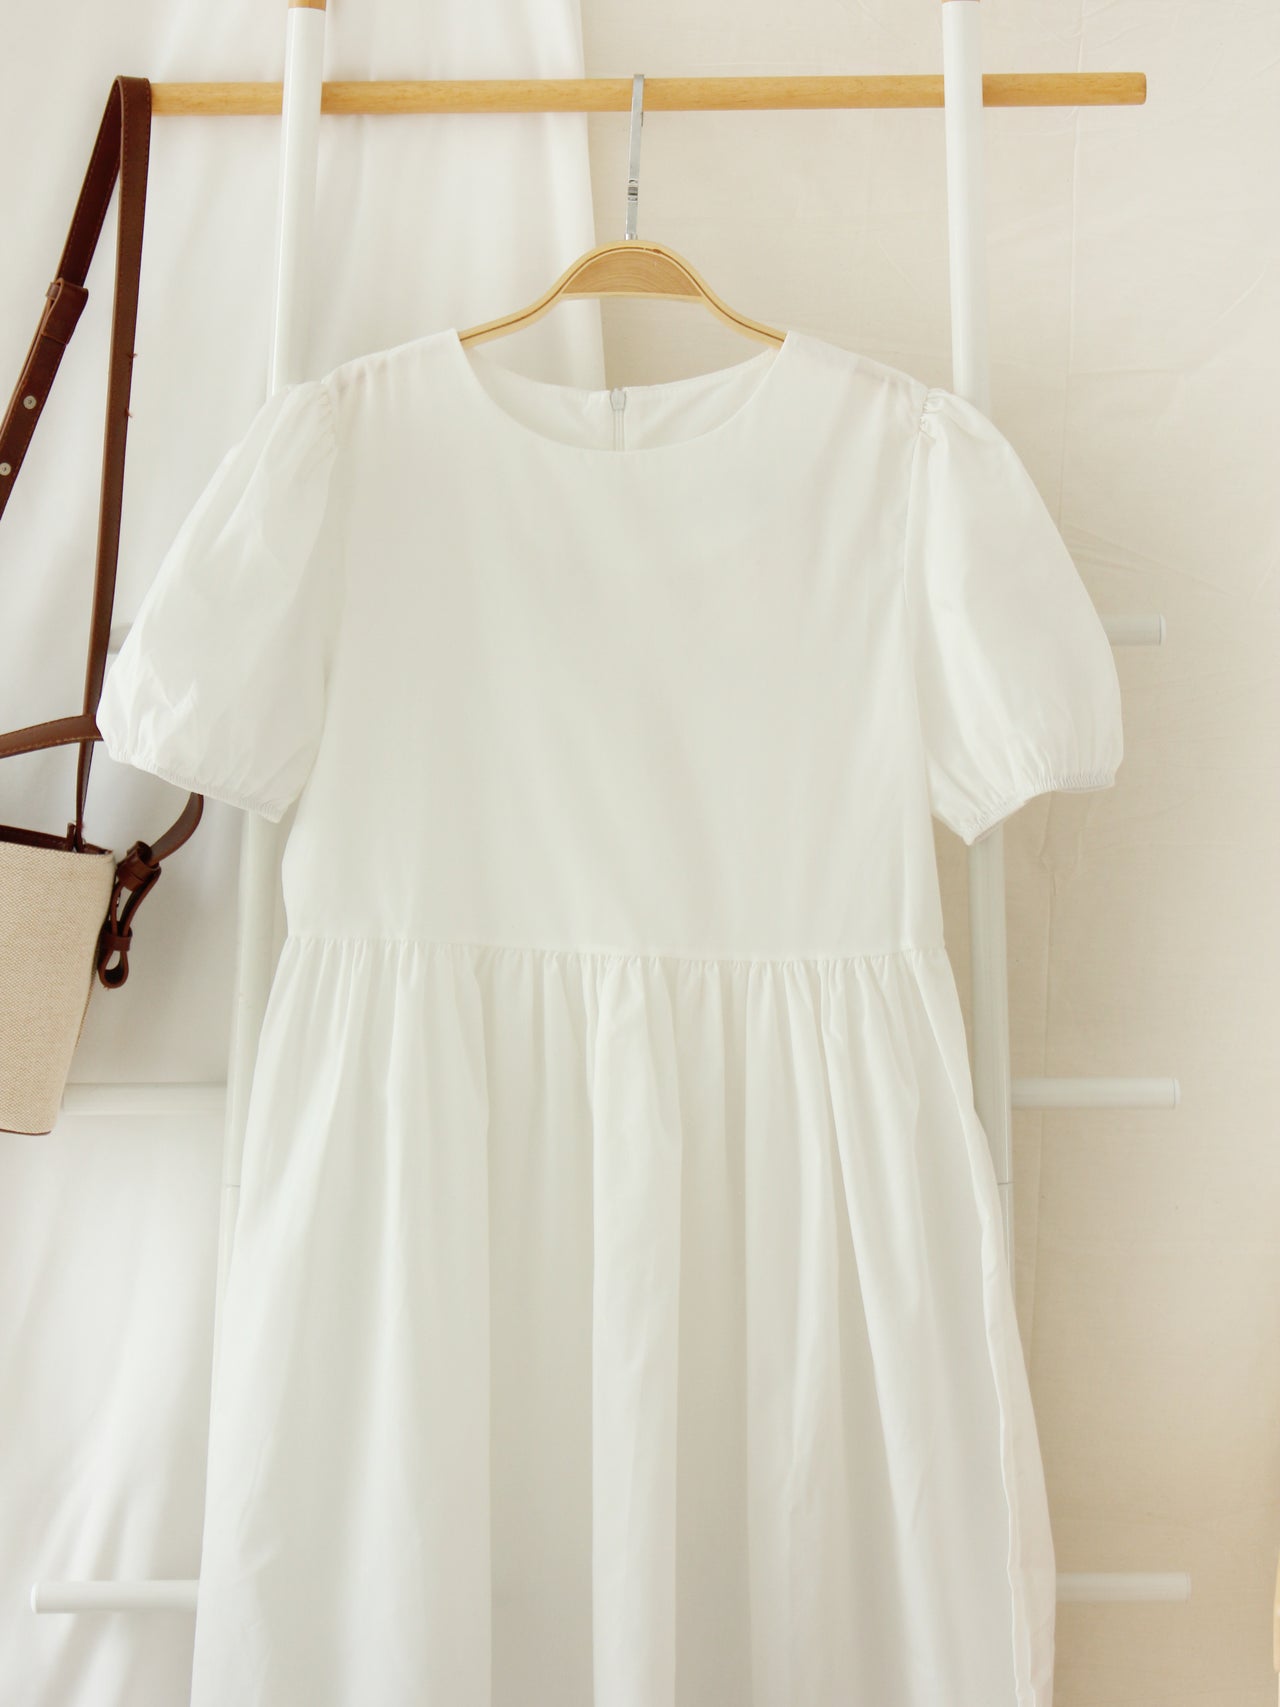 White Puffy Long Dress